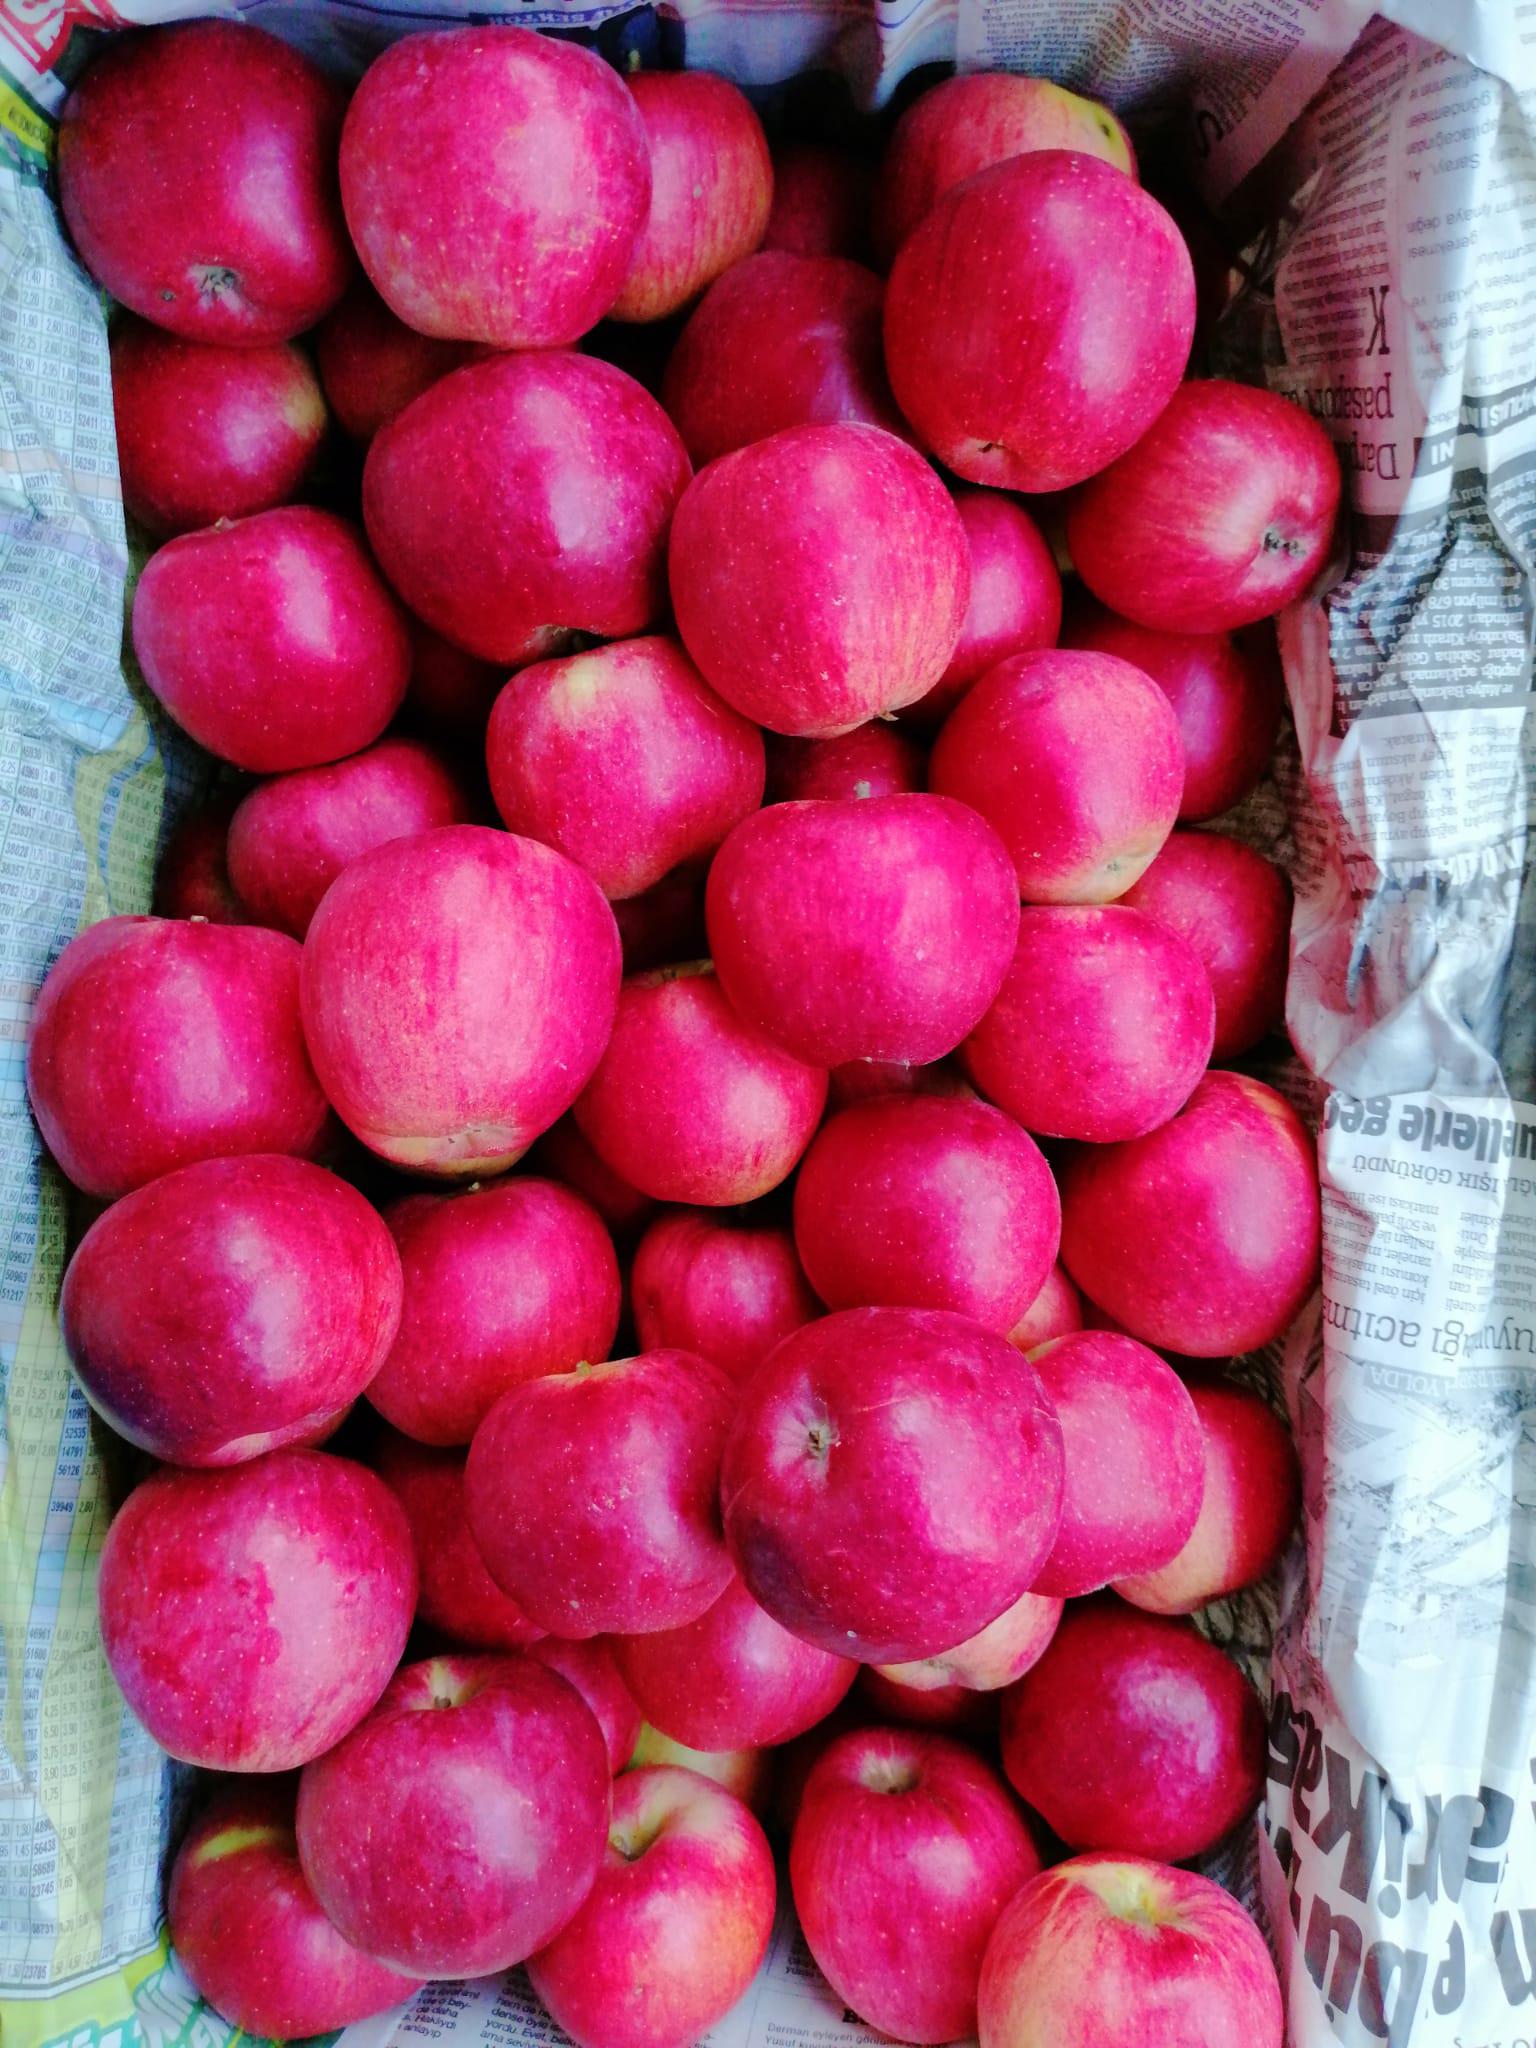 Elma - Fatmanur Nevra tarafından verilen satılık amasya çeşidi elma  ilanını ve diğer satılık elma ilanlarını tarimziraat.com adresinde bulabilirsiniz